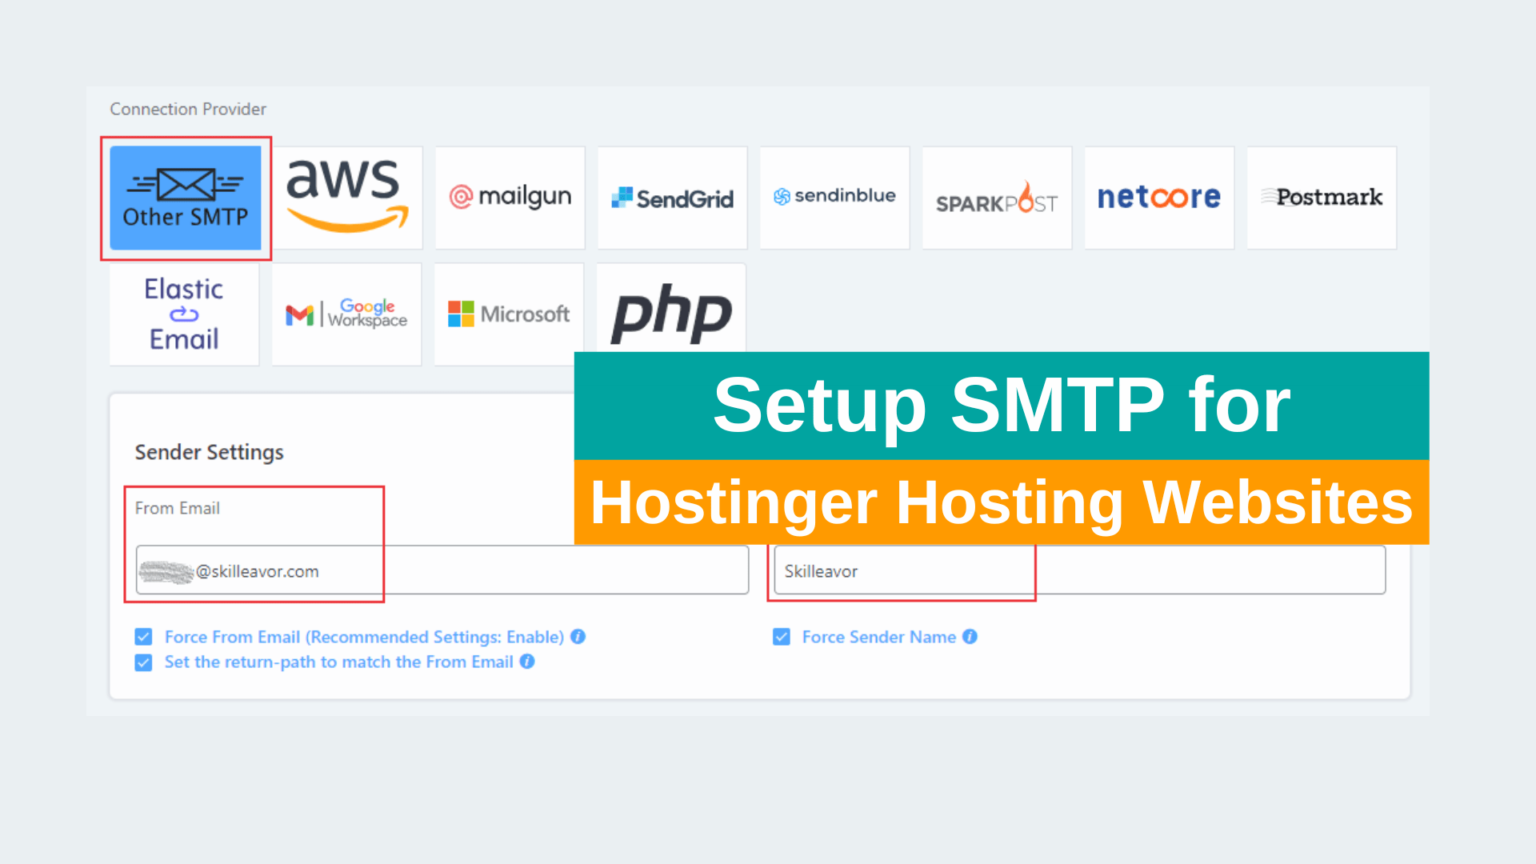 How to Setup SMTP for Hostinger Hosting Websites